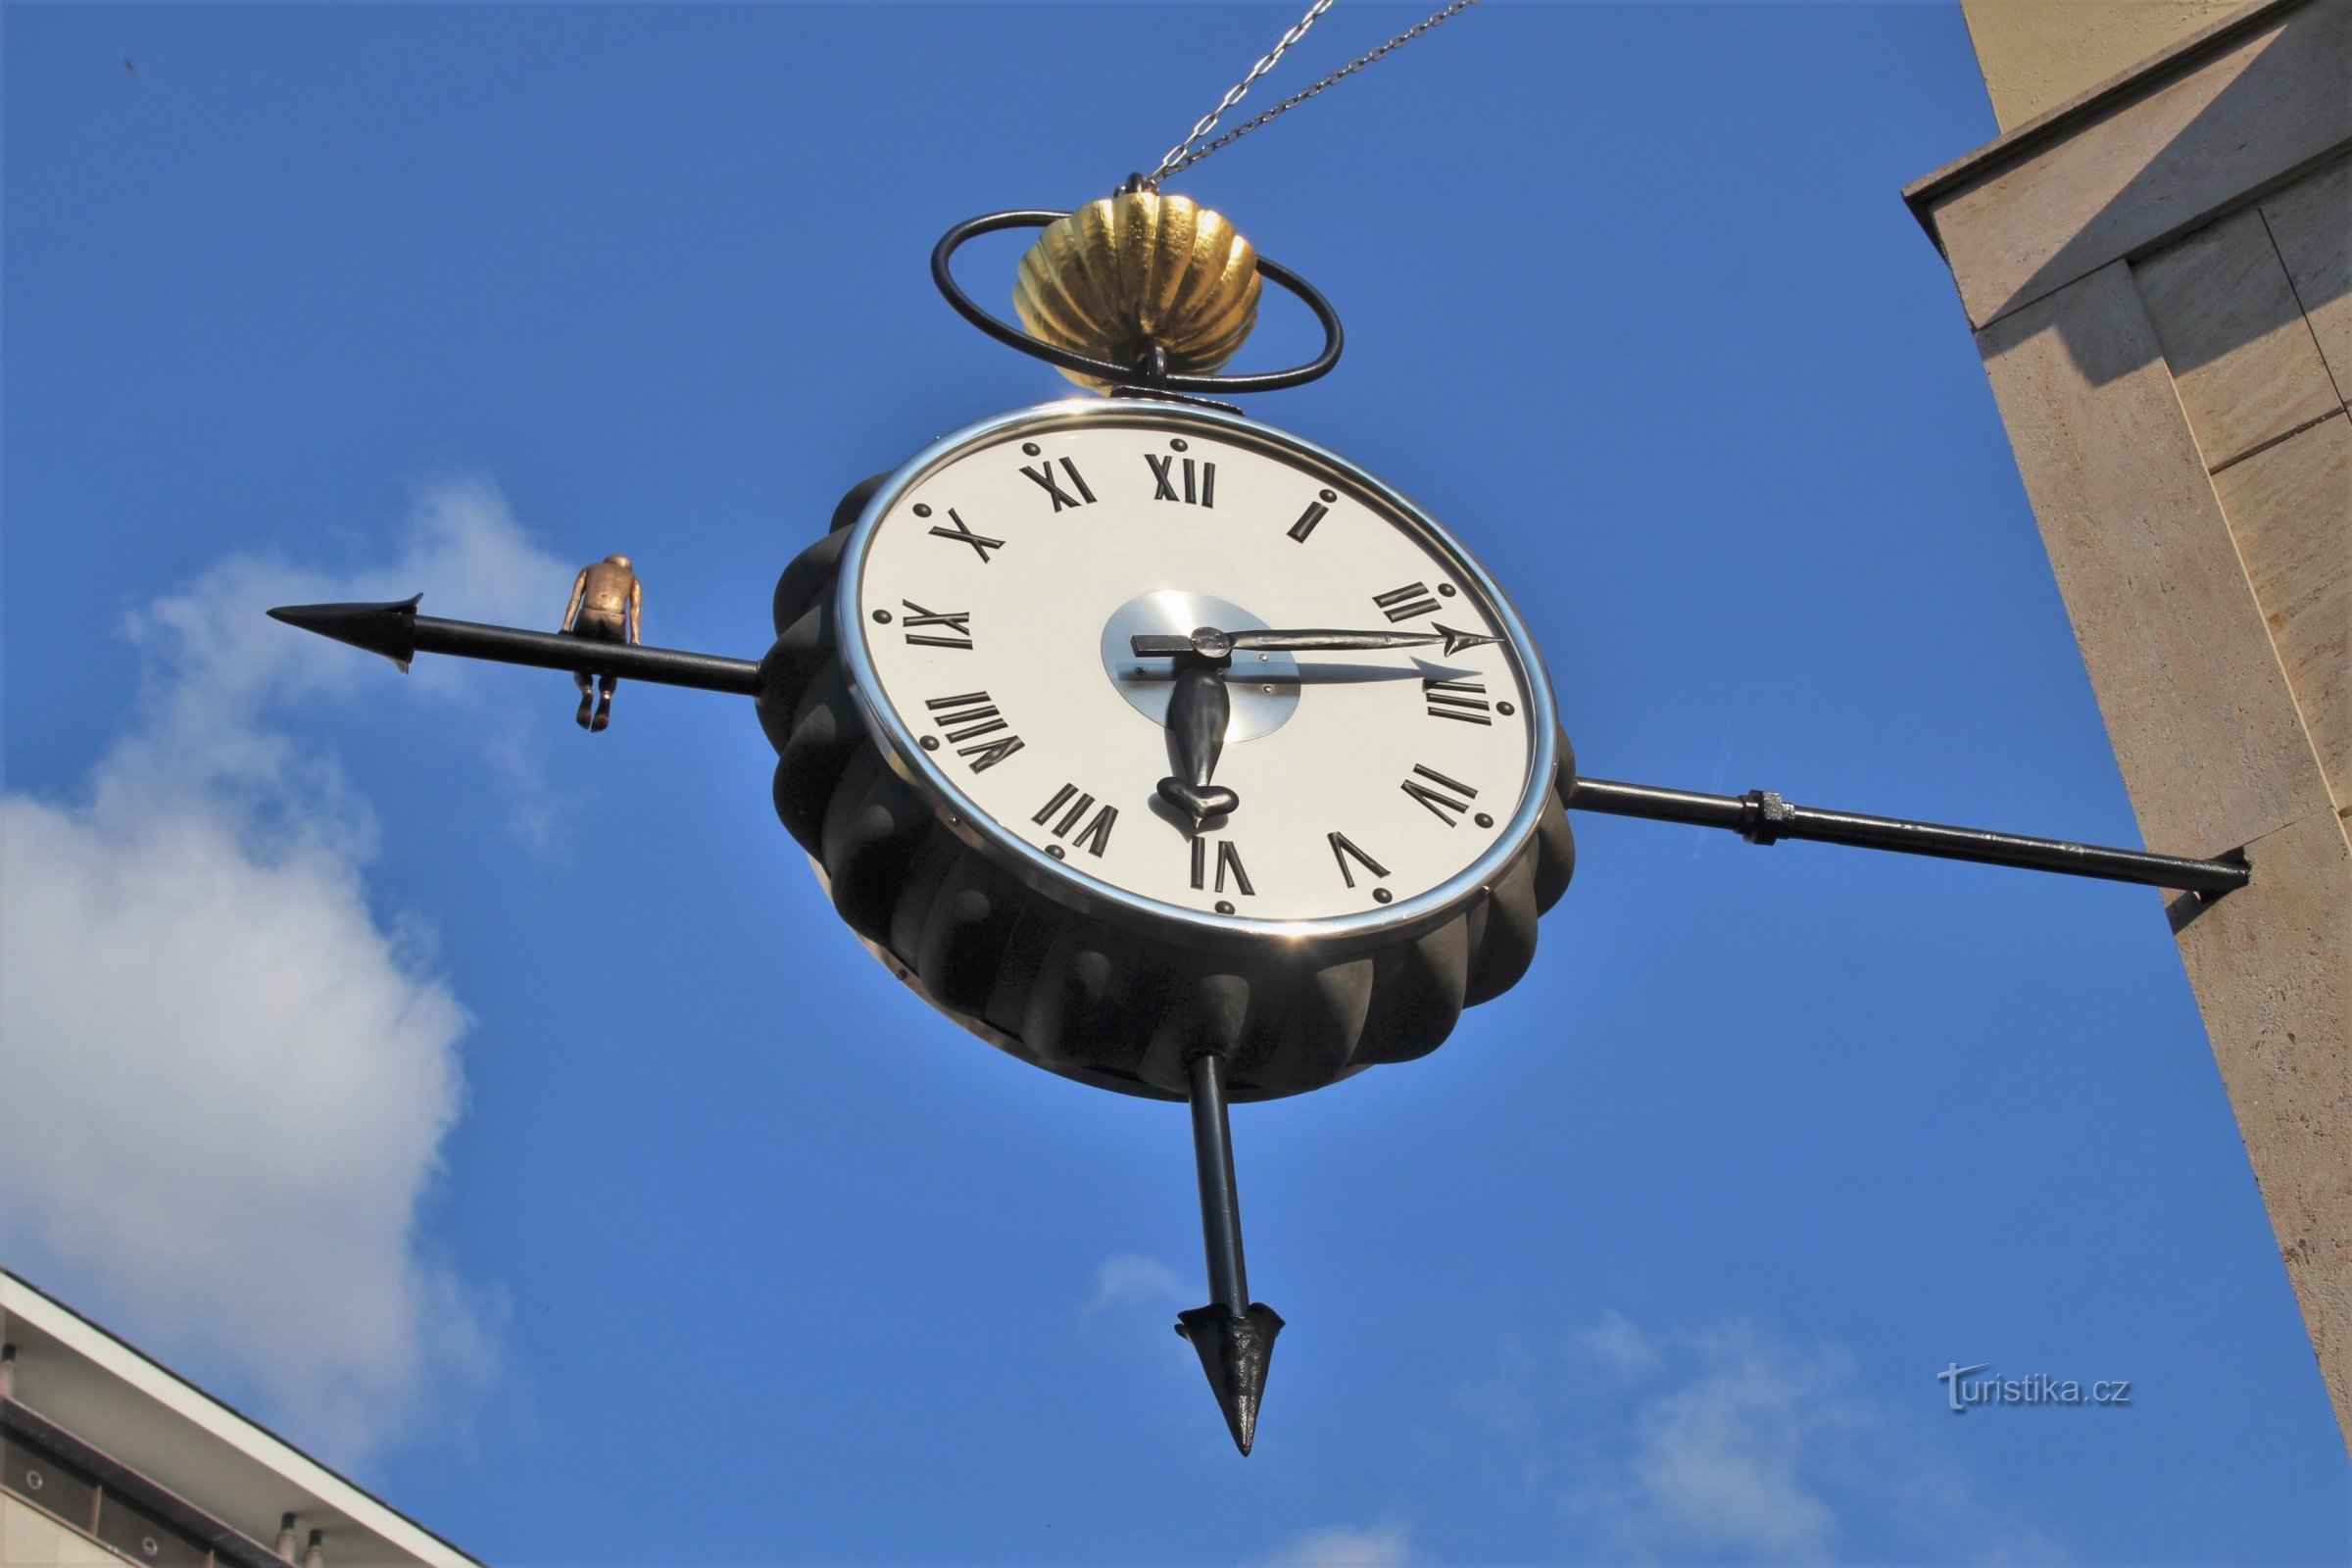 Brno - clock in Czech